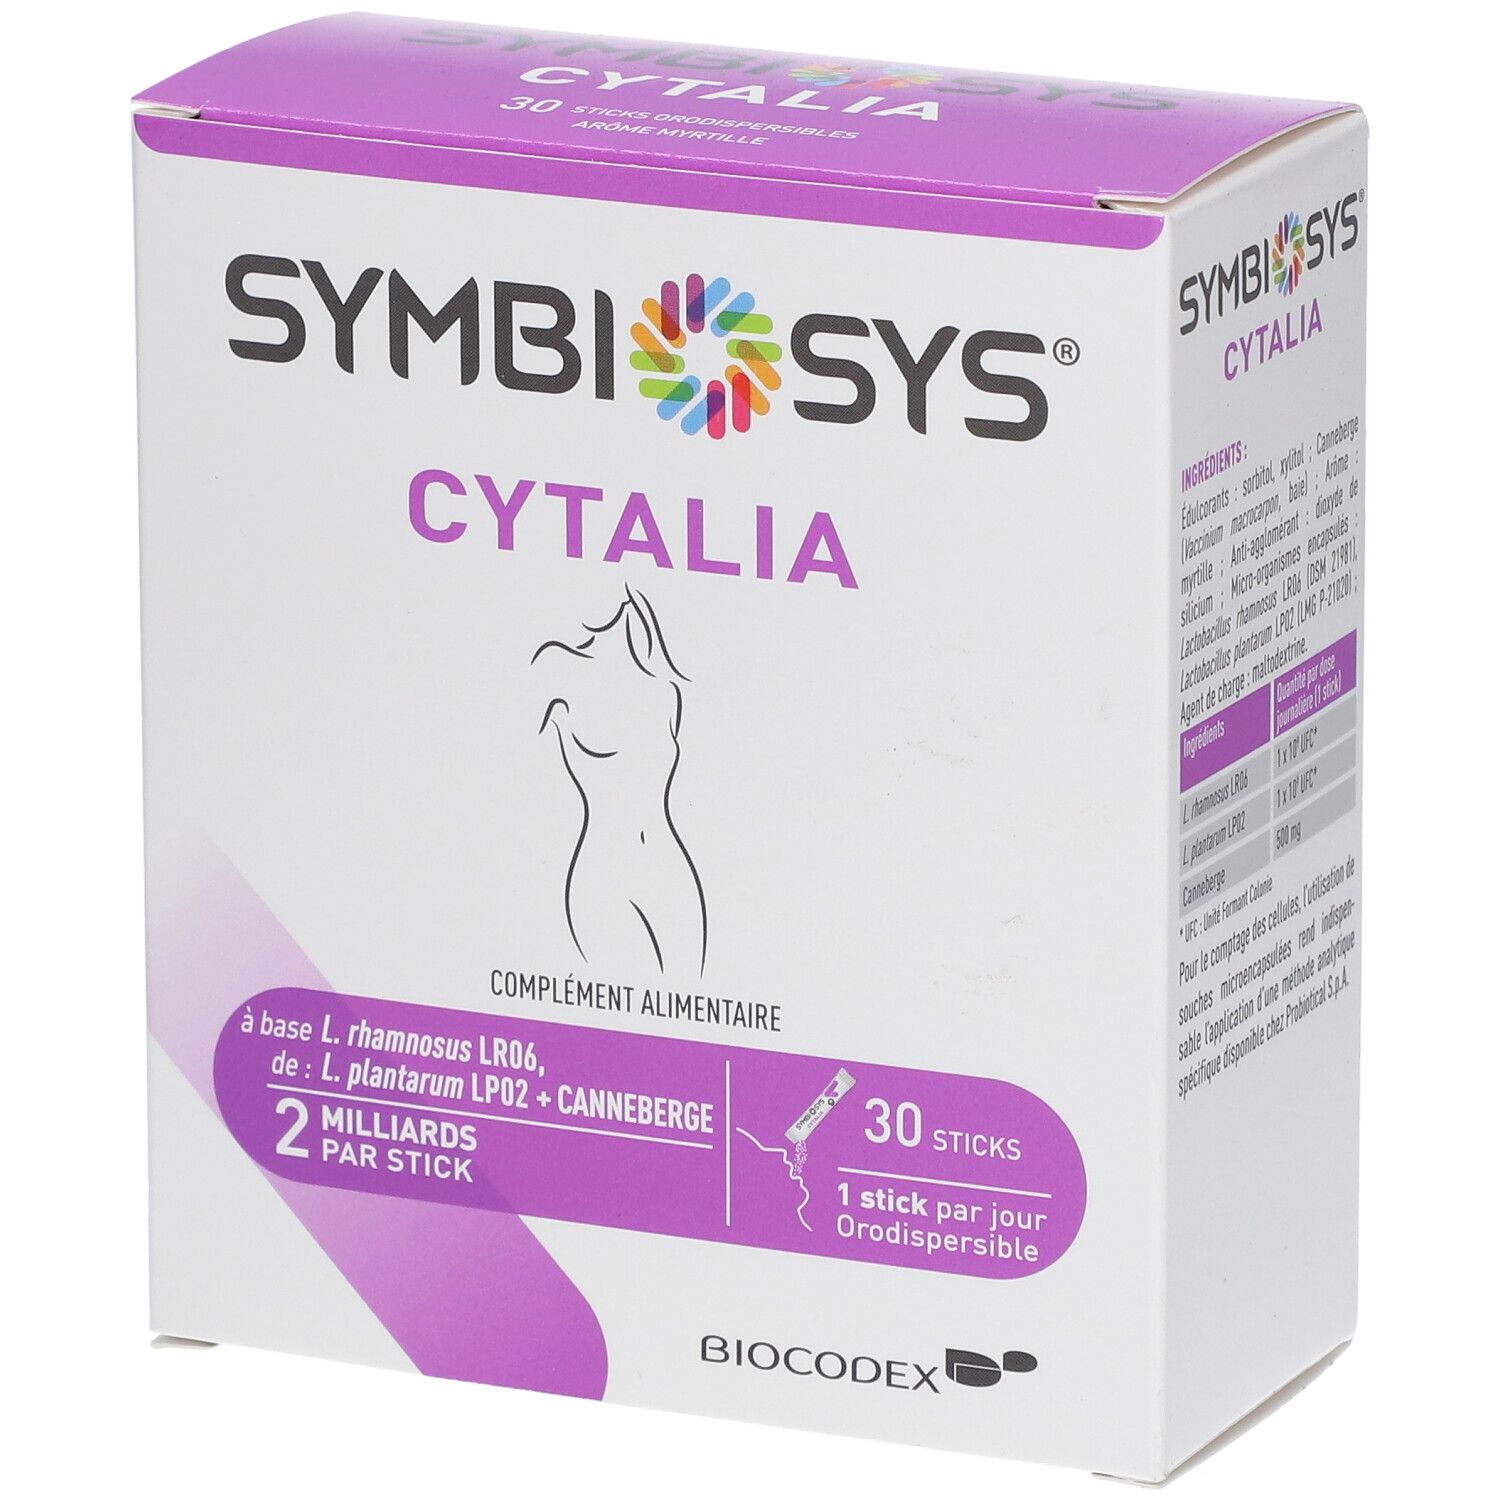 Symbiosys® Cytalia